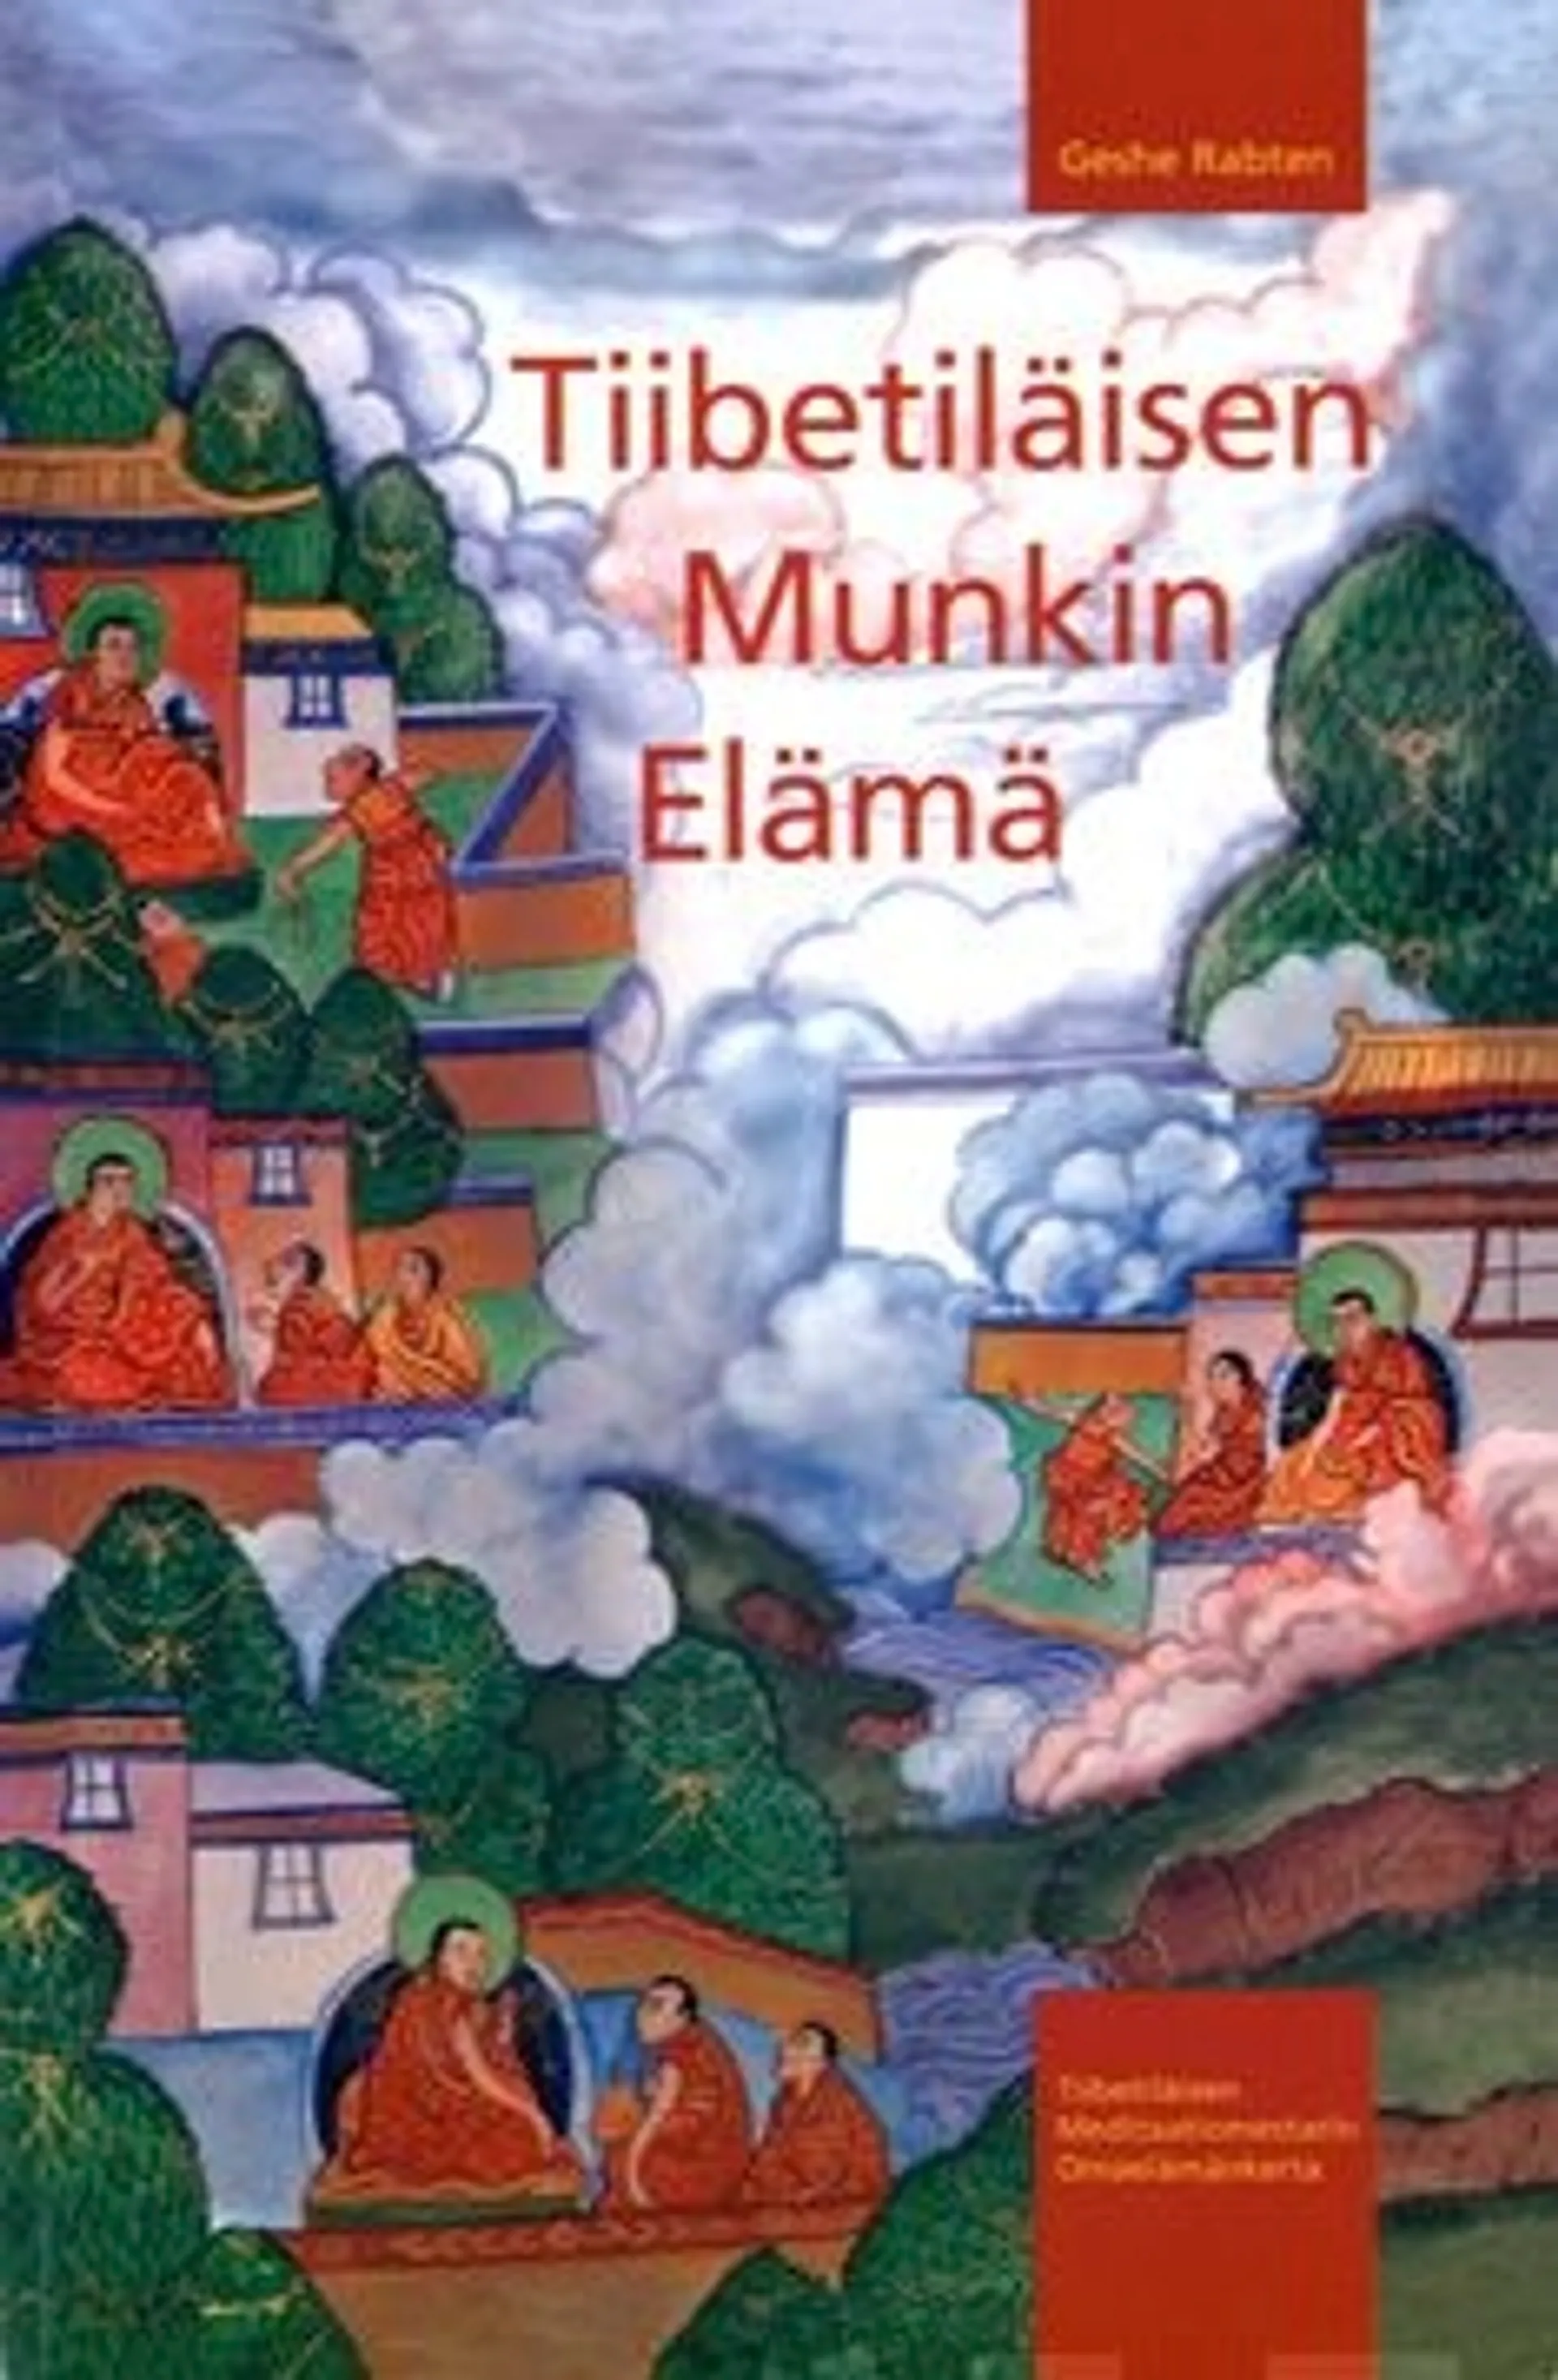 Geshe Rabten - Tiibetiläisen munkin elämä